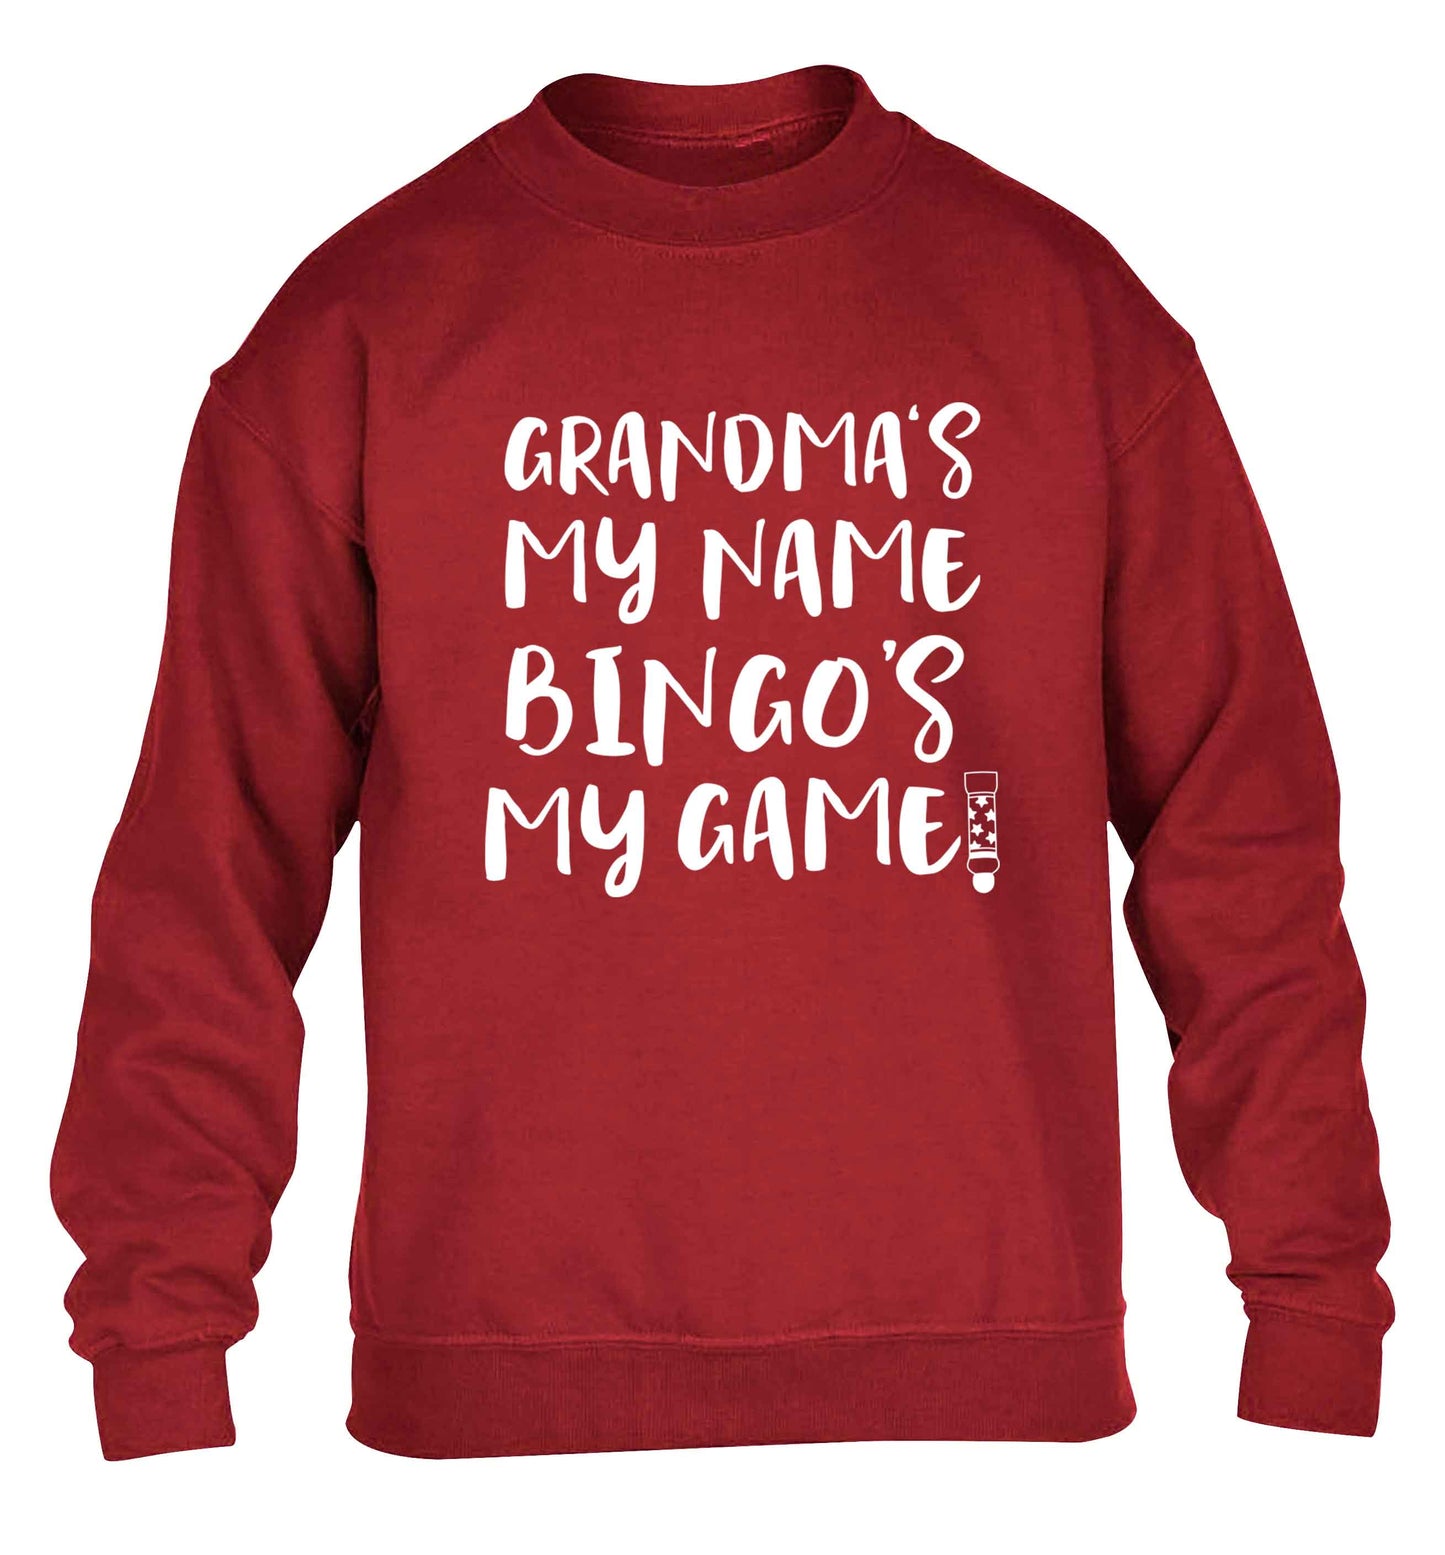 Grandma's my name bingo's my game! children's grey sweater 12-13 Years